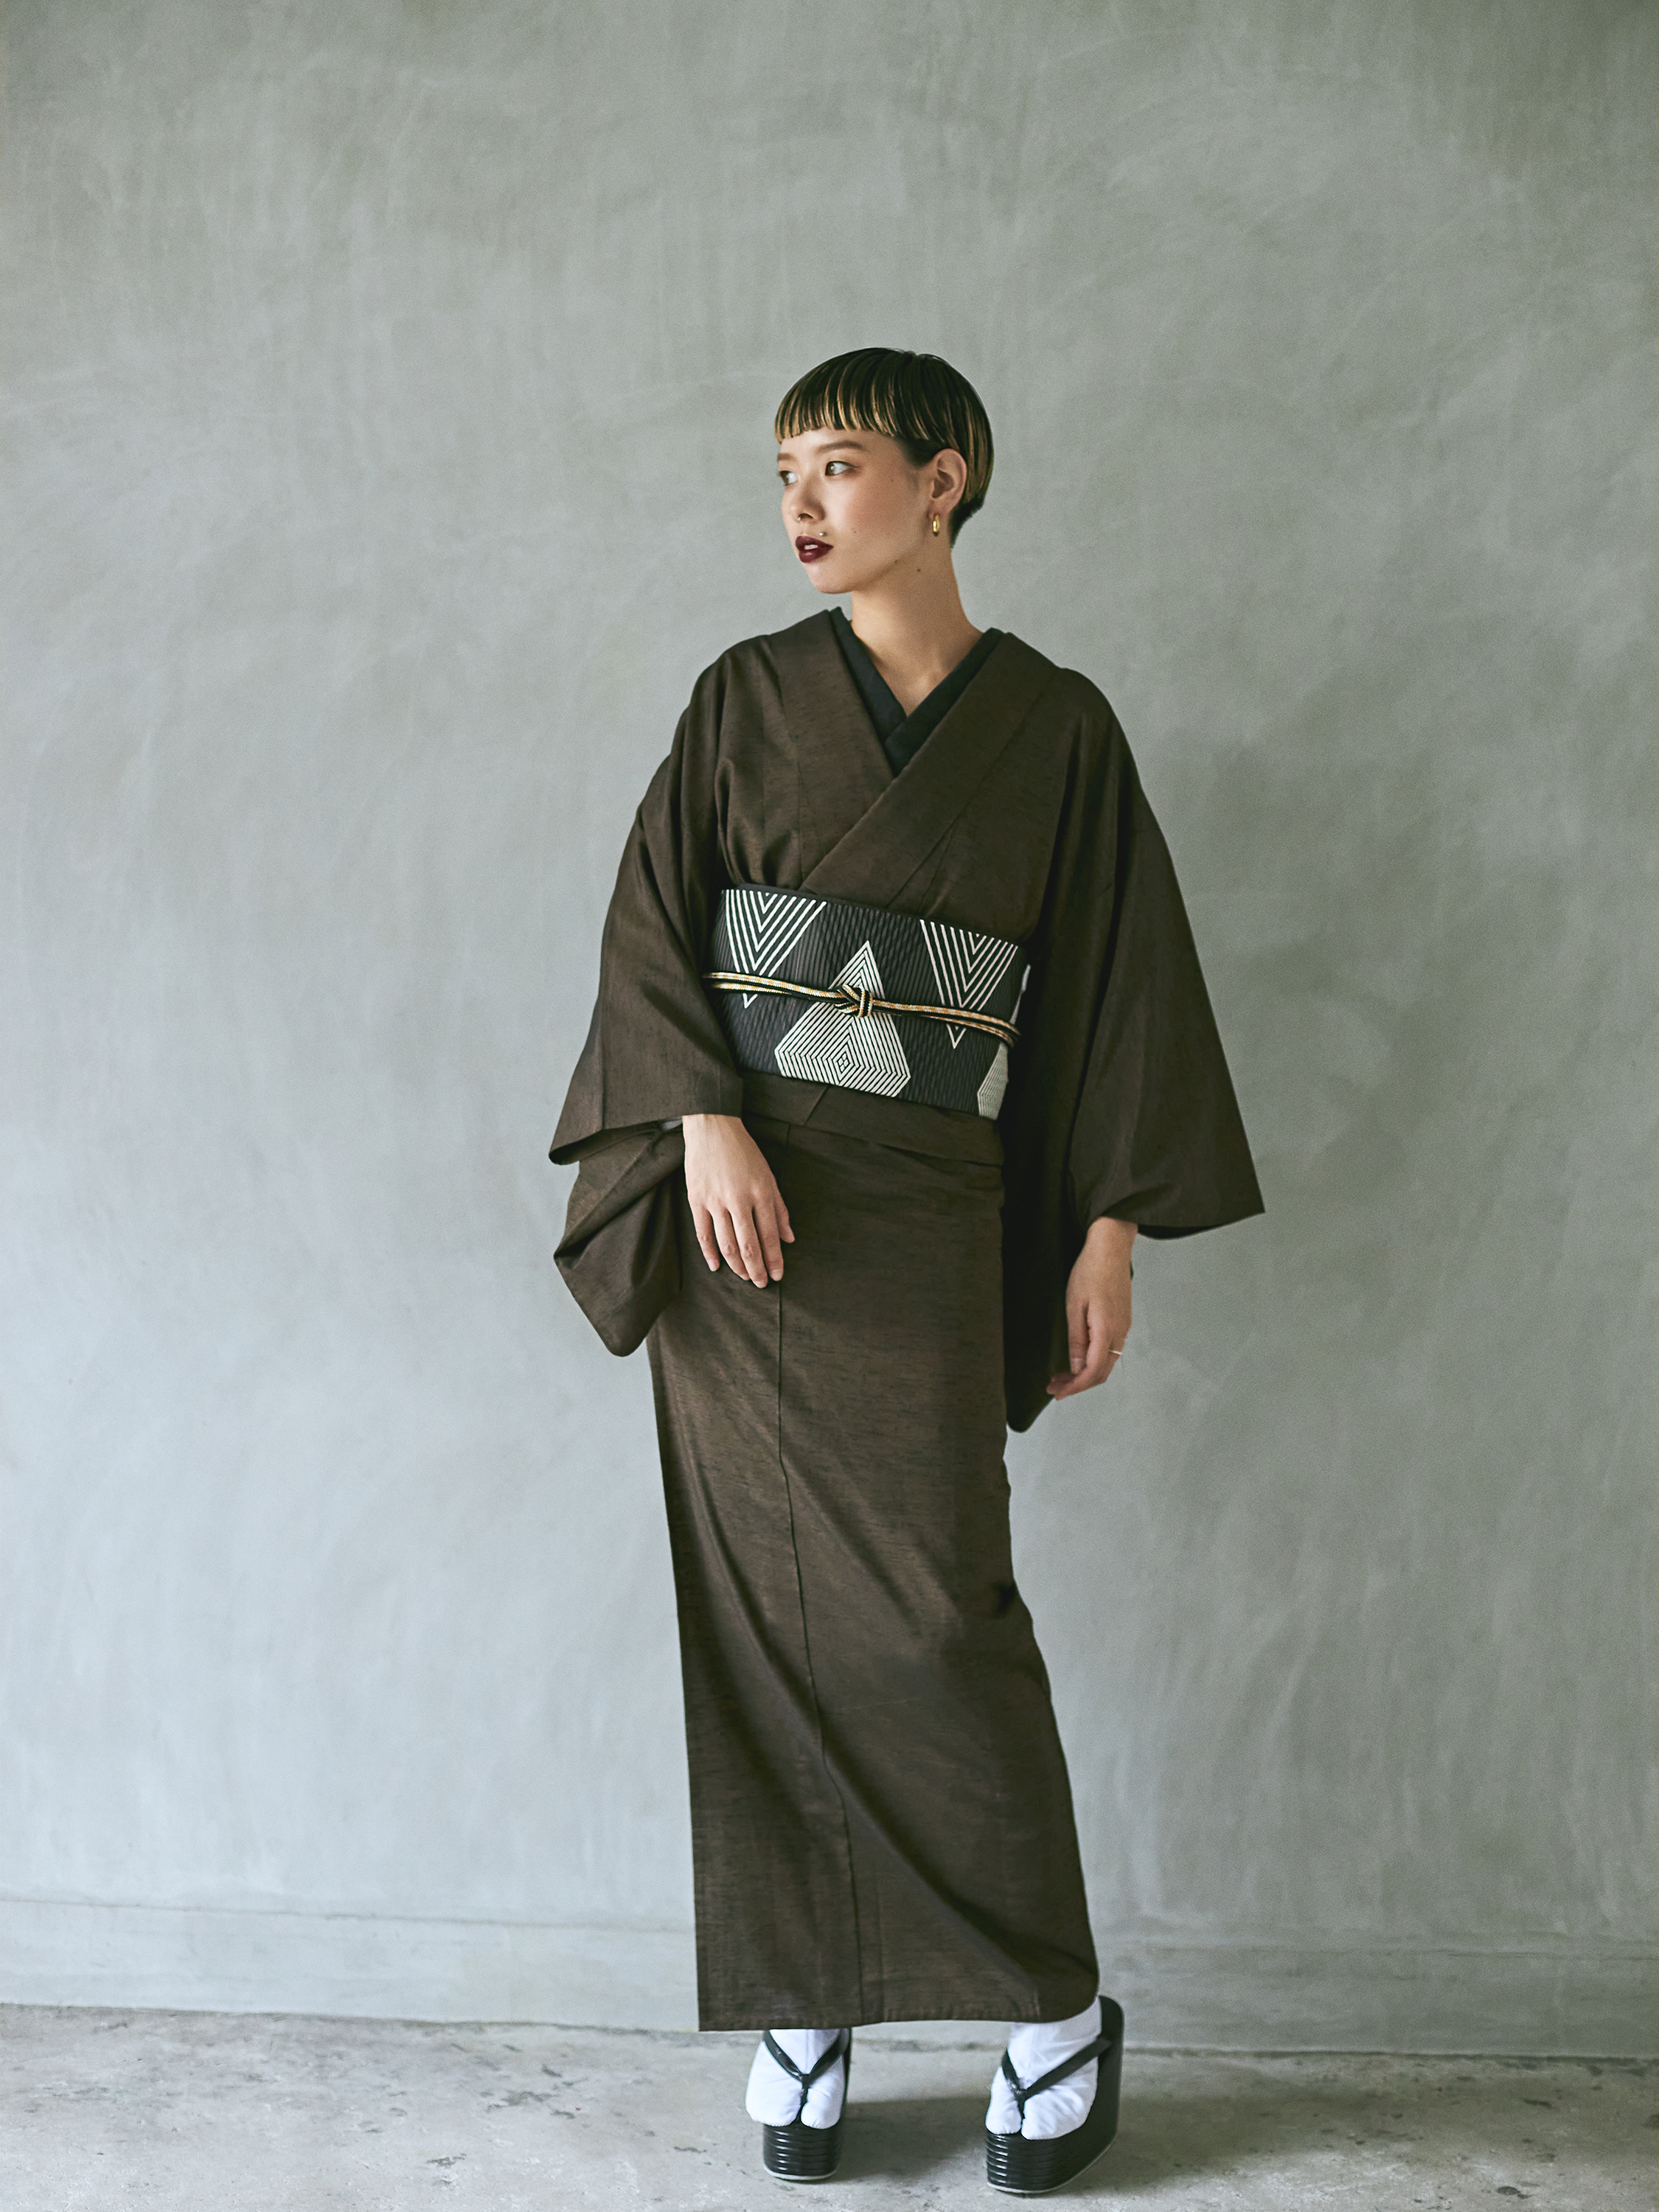 Fabric Yonezawa Ori Juyo Tsumugi “Hibiki” Brown